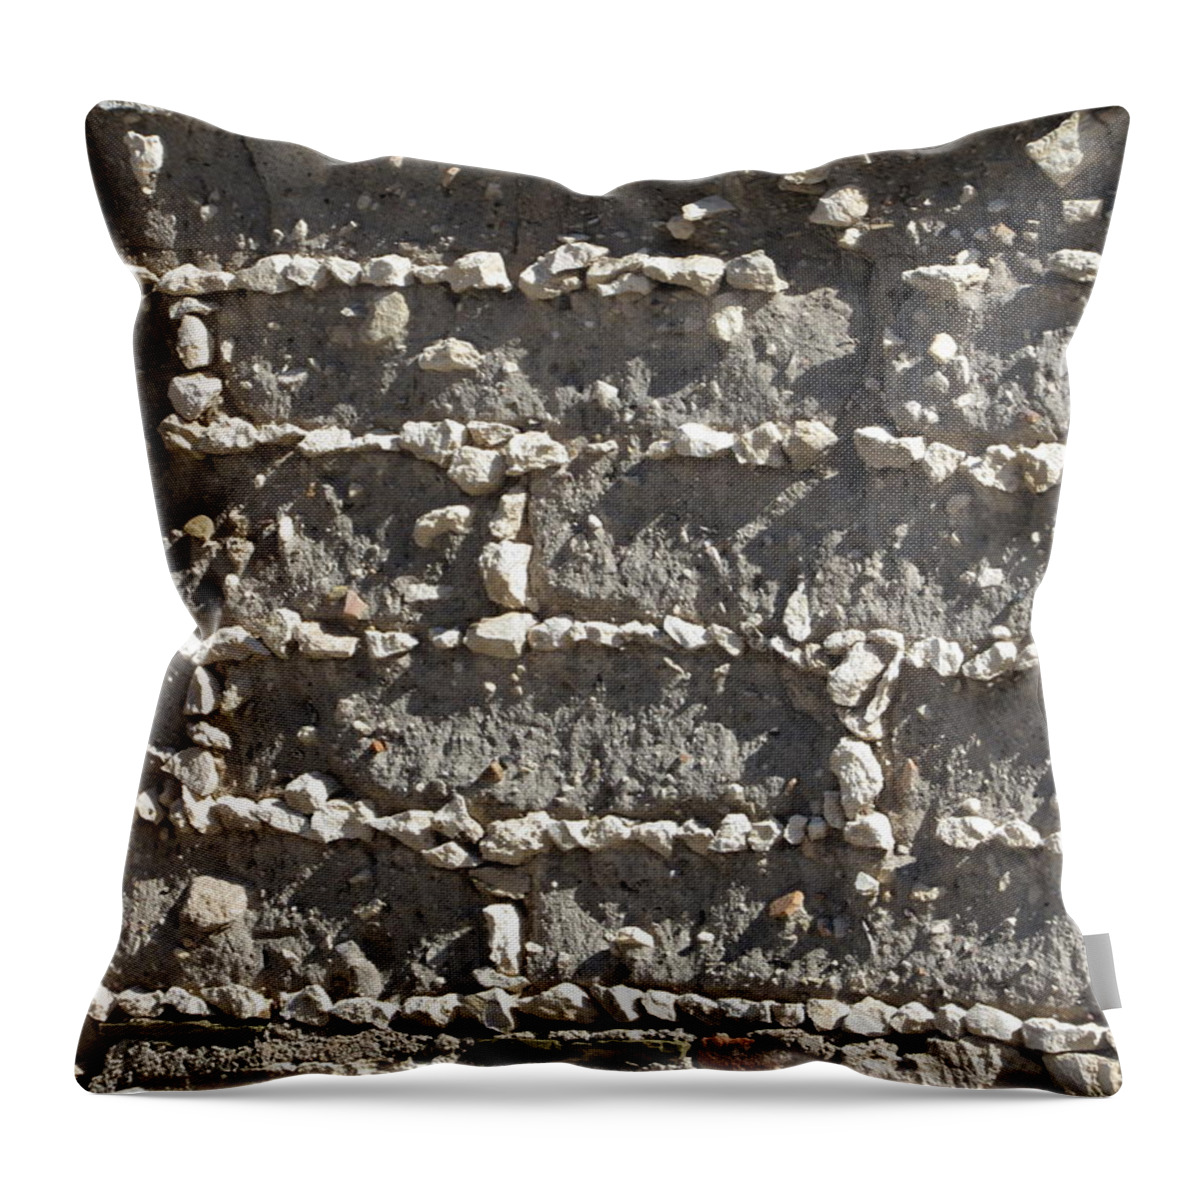 Interior Design Throw Pillow featuring the digital art Patch #2 #1 by Scott S Baker